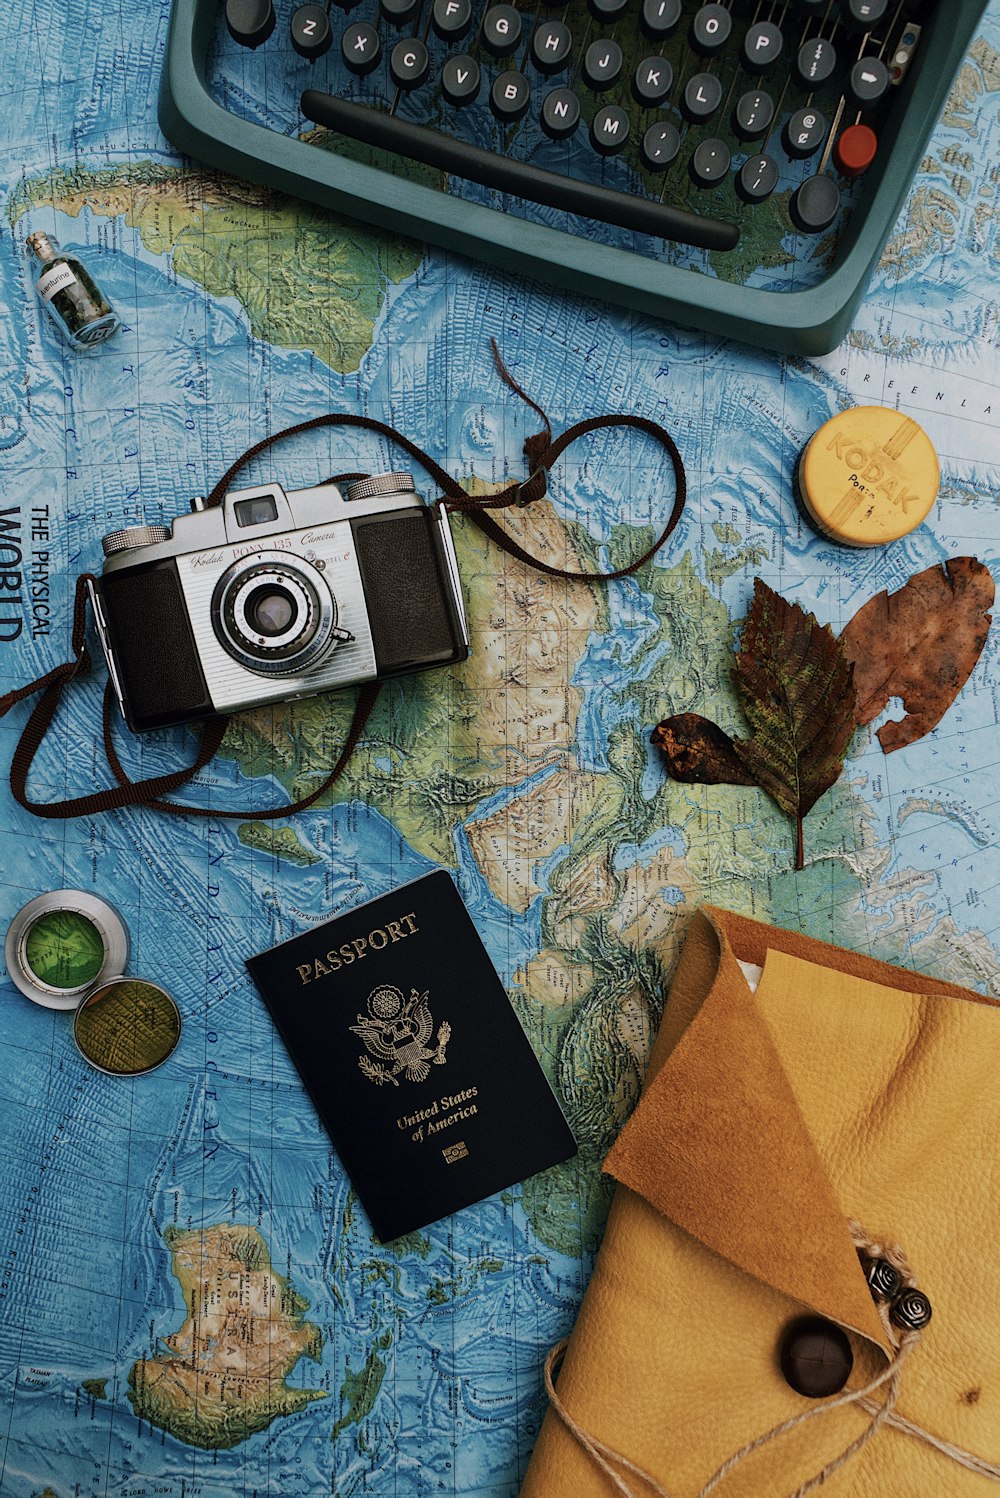 카메라, 노트북, 여권의 플랫레이 사진